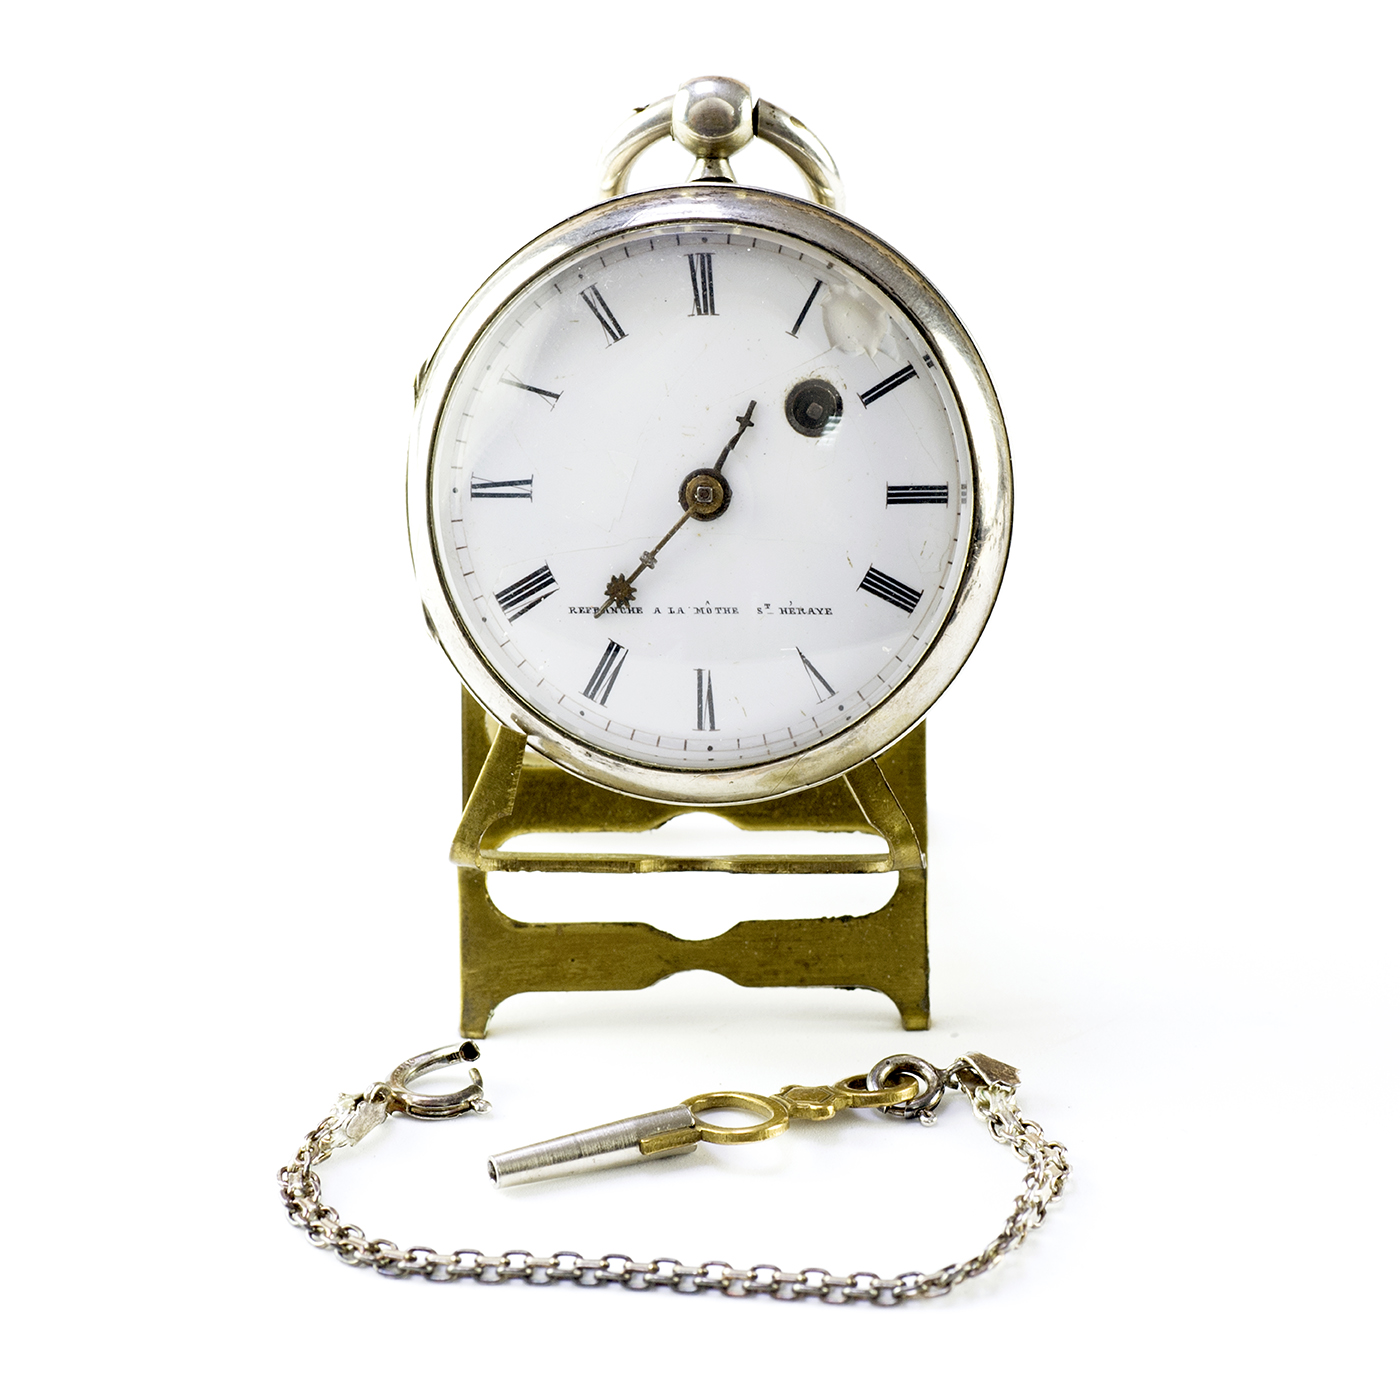 REFRANCHE A LA MOTHE, ST. HERAYE. Reloj de Bolsillo, lepine, Verge Fusee (Catalino), Francia, Ca. 1800